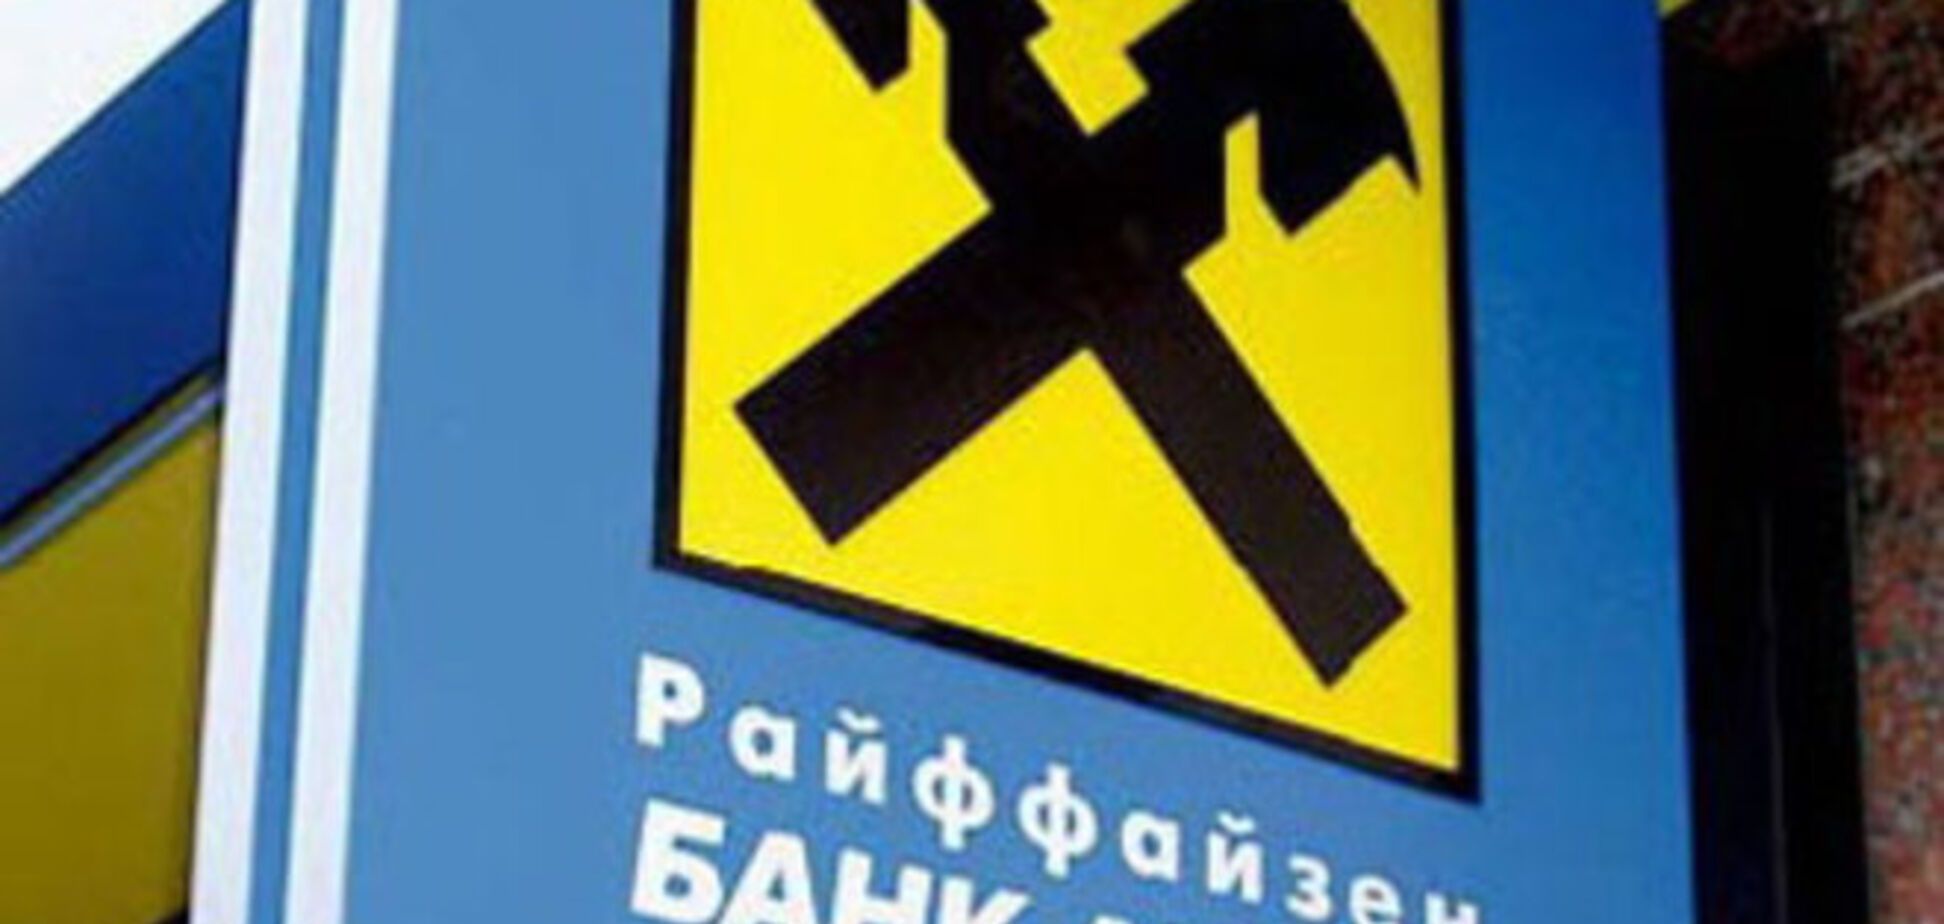 'Райффайзен Банк Аваль' приостановил работу отделений в Луганской и Донецкой областях - СМИ